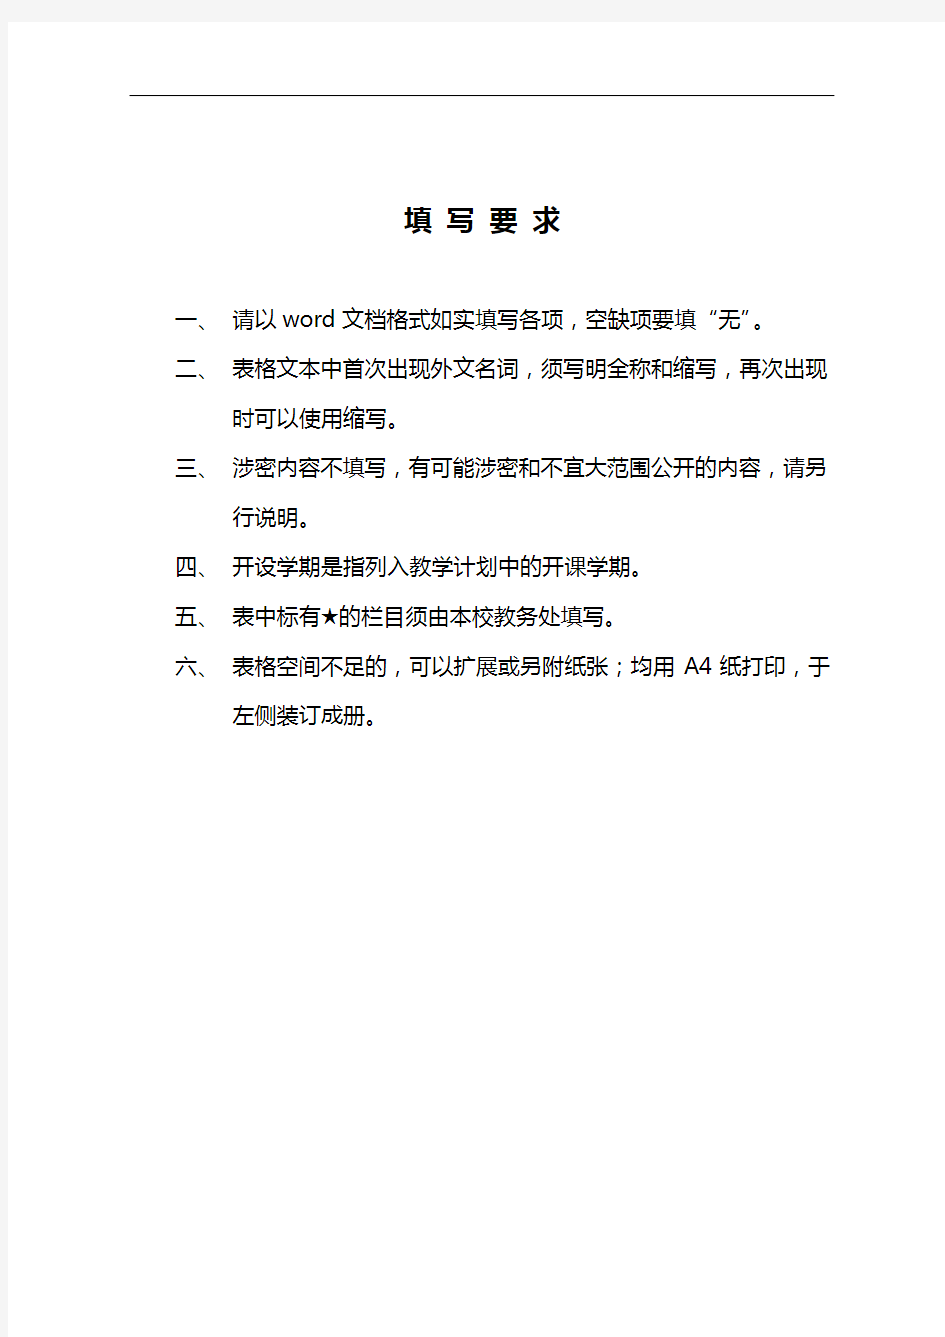 上海高校示范性全英语教学课程建设验收报告书